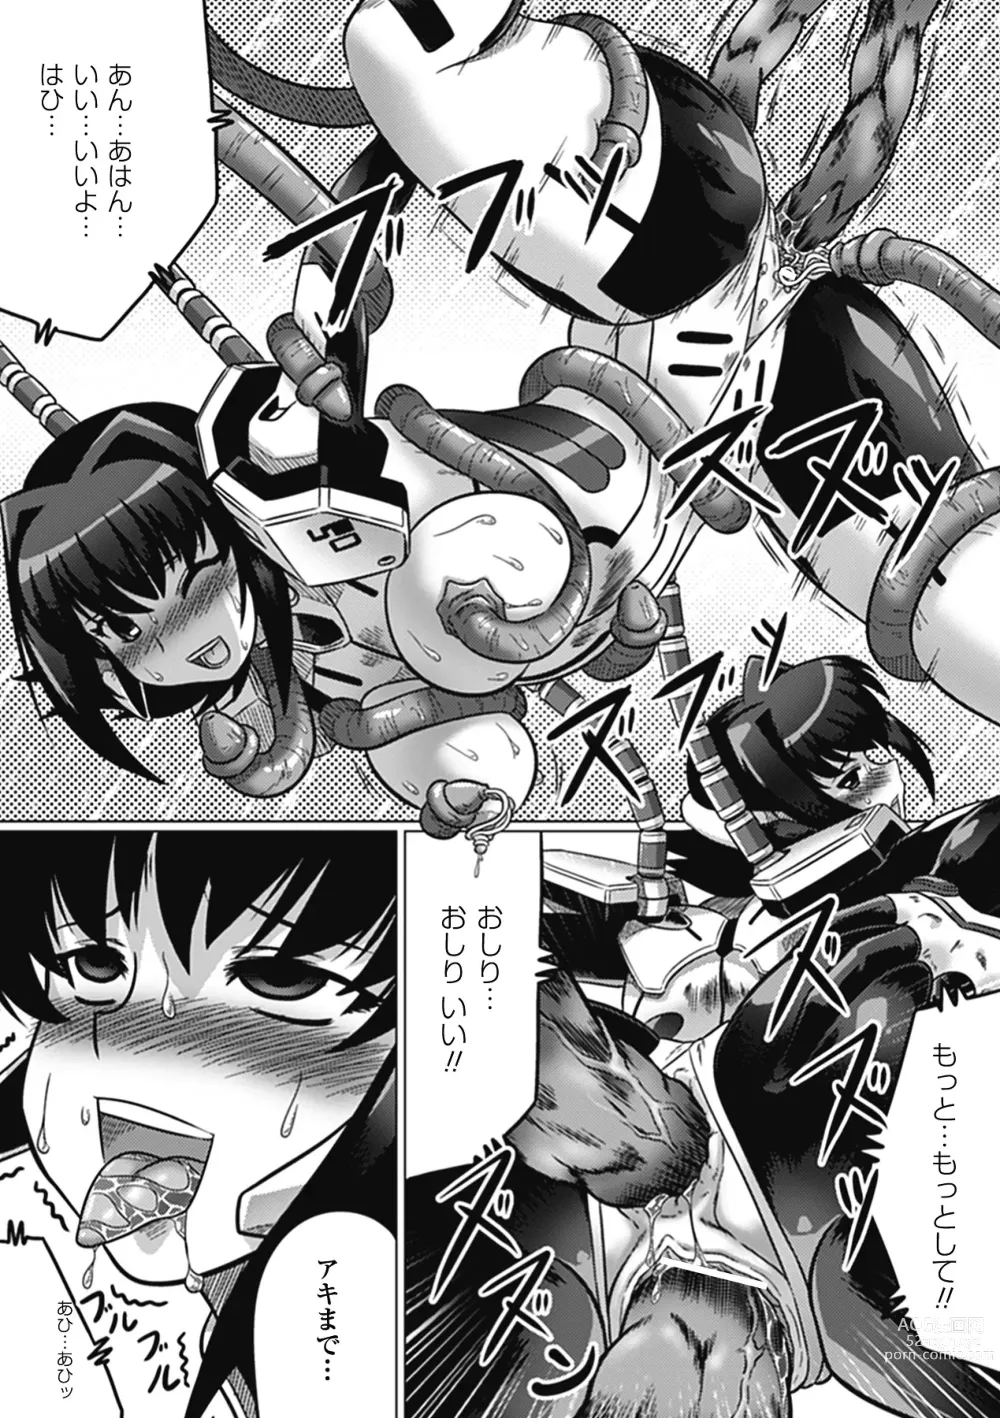 Page 28 of manga Ochita Tenshitachi no Zanei